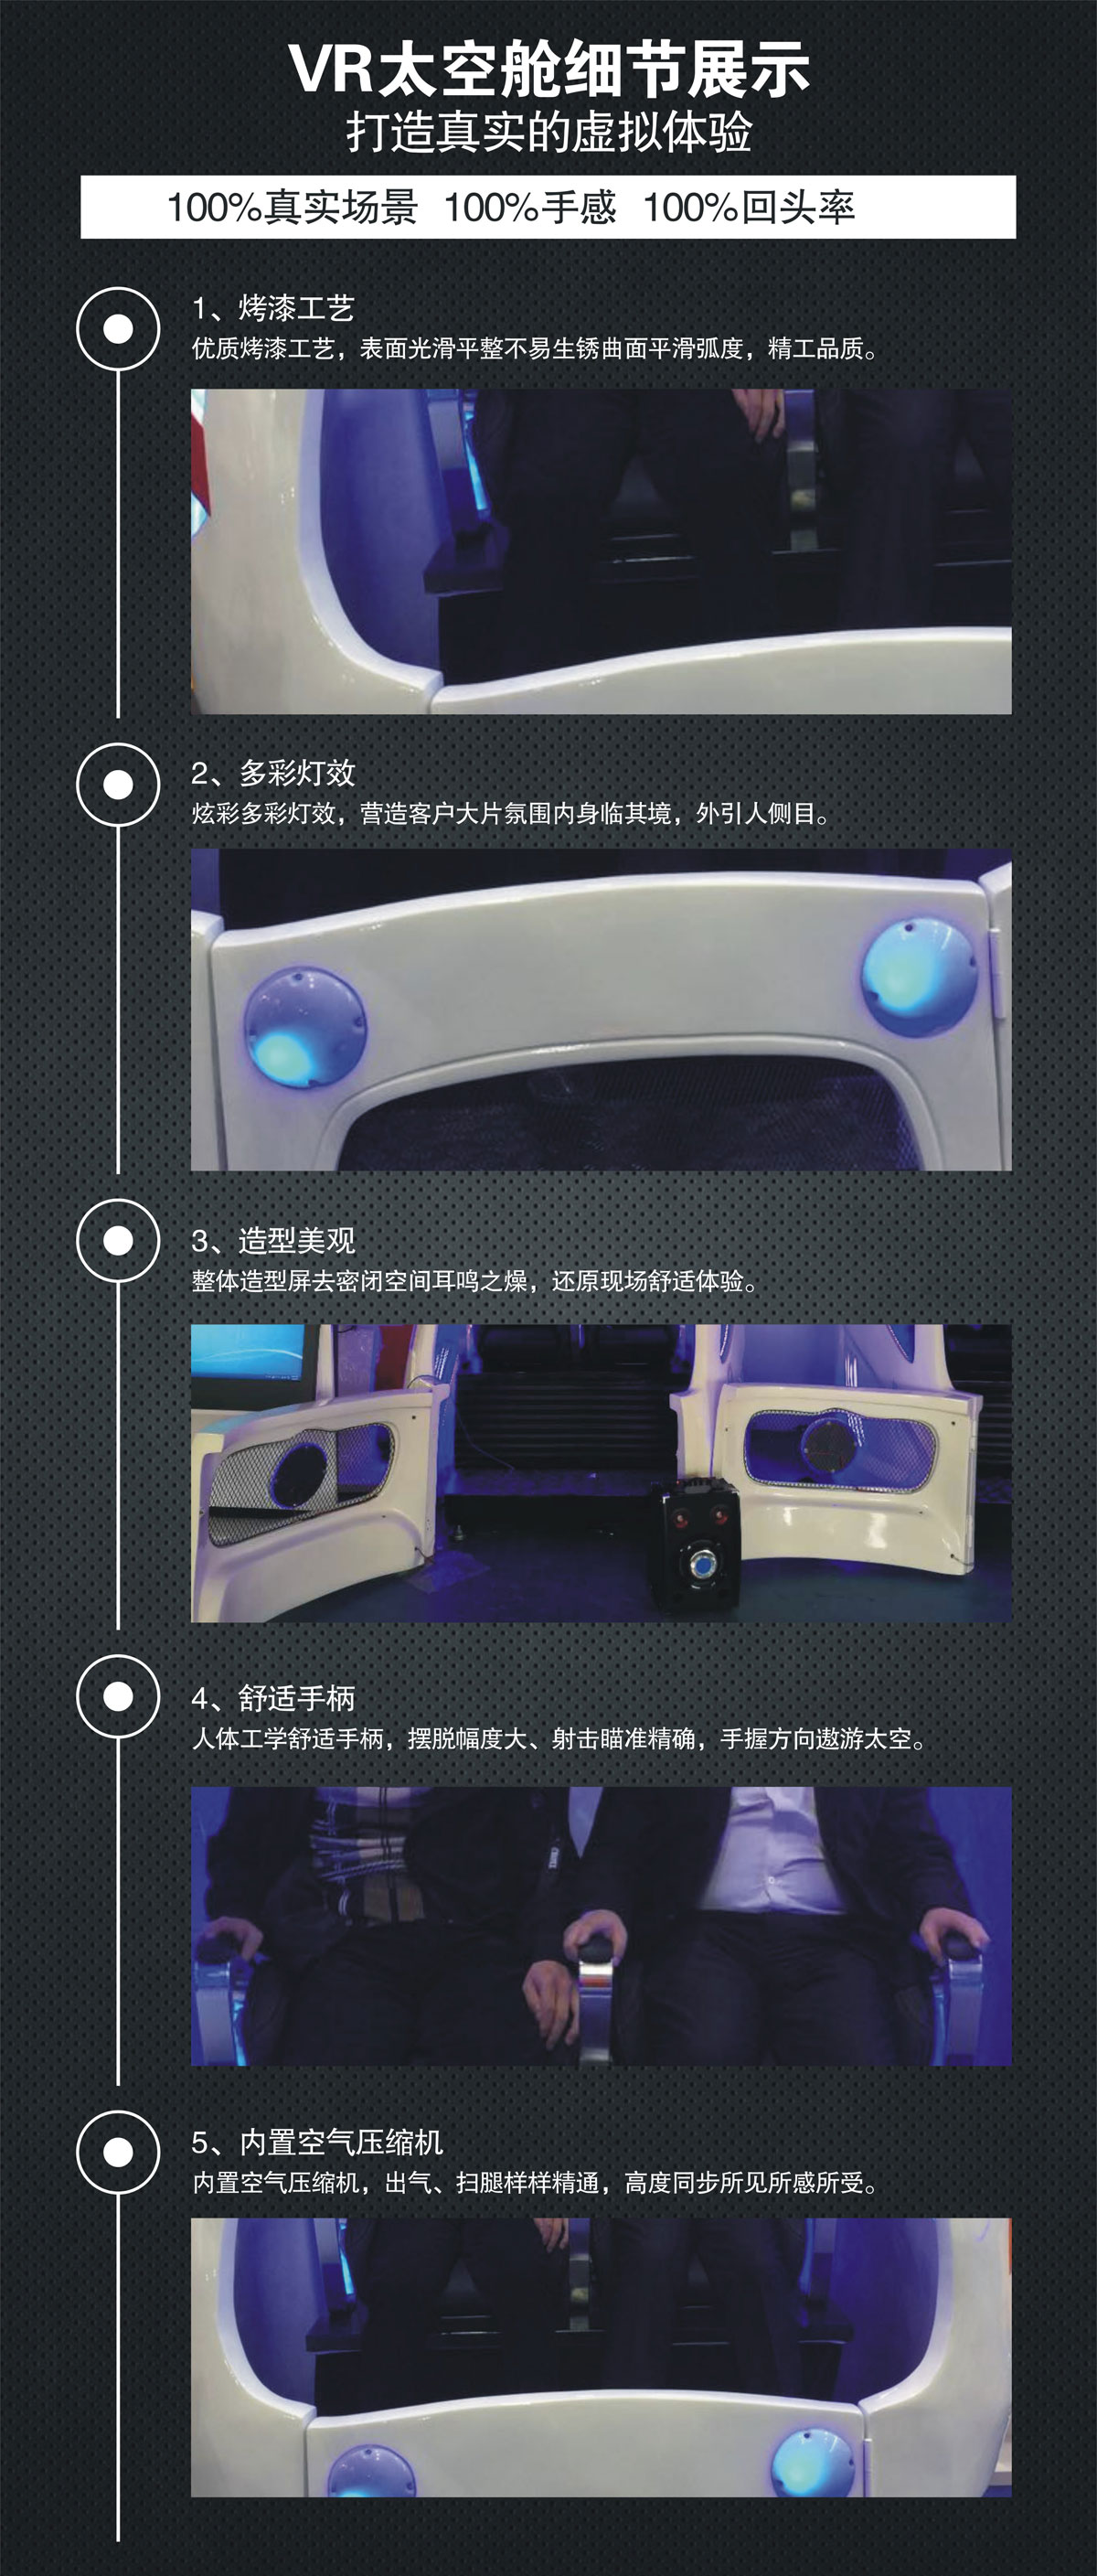 社区安全VR太空舱细节展示.jpg